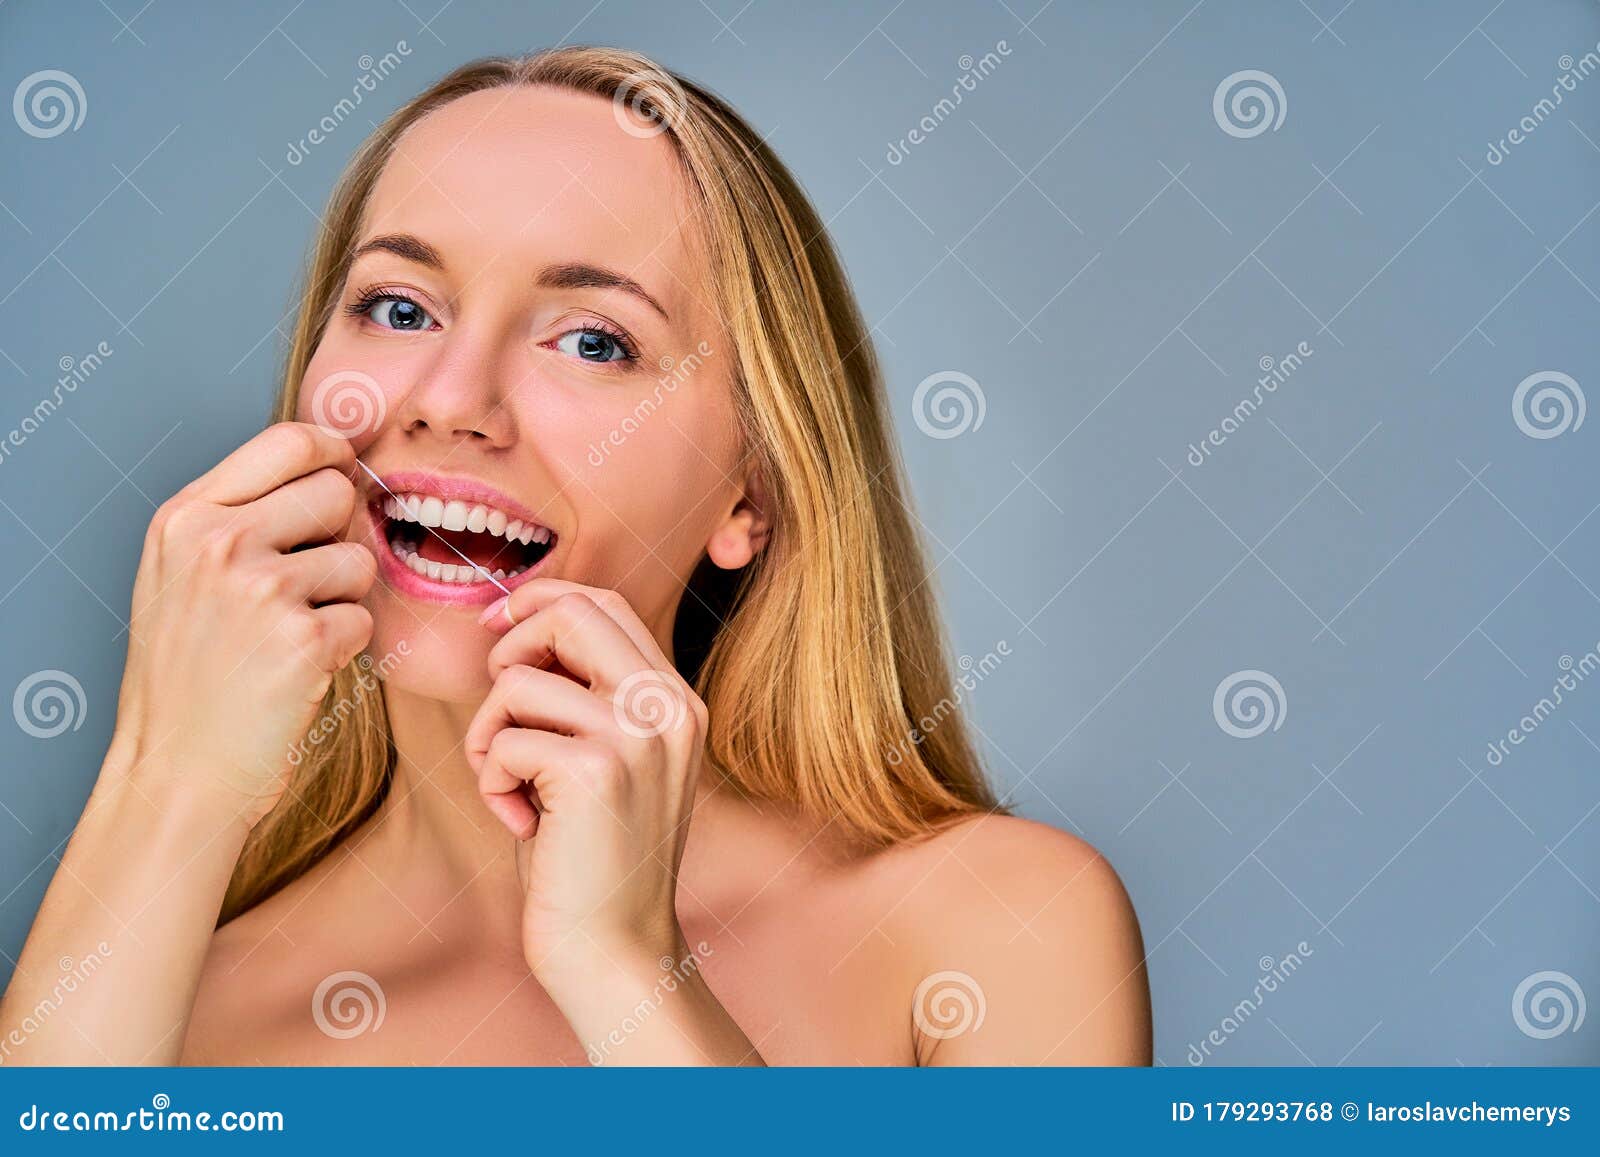 https://thumbs.dreamstime.com/z/chiudi-felice-ragazza-che-si-pulisce-i-denti-con-lo-stuzzicadenti-concetto-odontoiatrico-donna-lunghi-capelli-biondi-e-lisci-filo-179293768.jpg